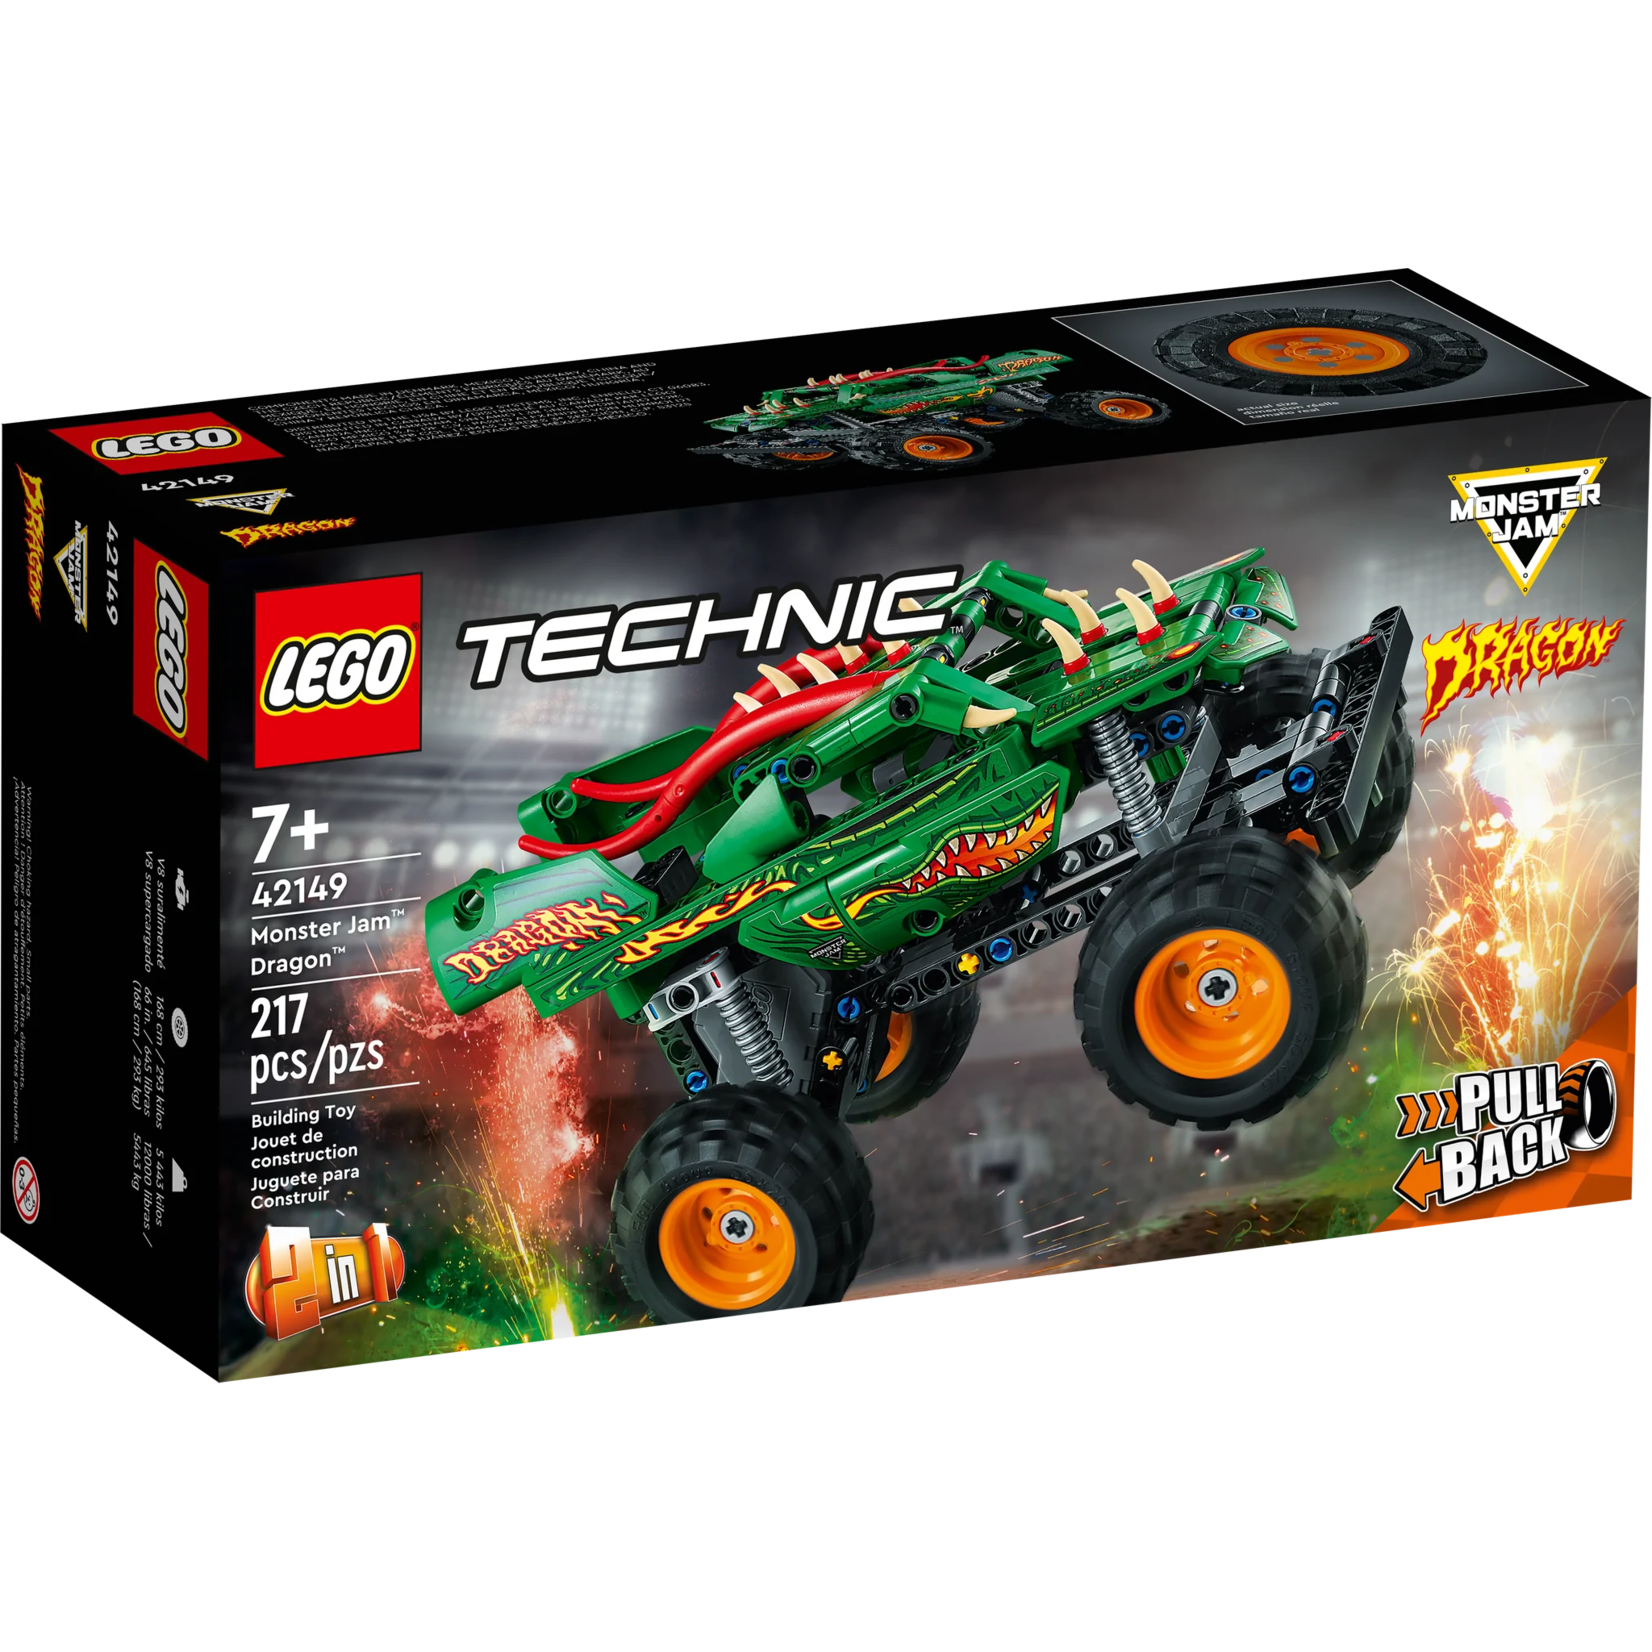 LEGO LEGO Technic Monster Jam Dragon 42149